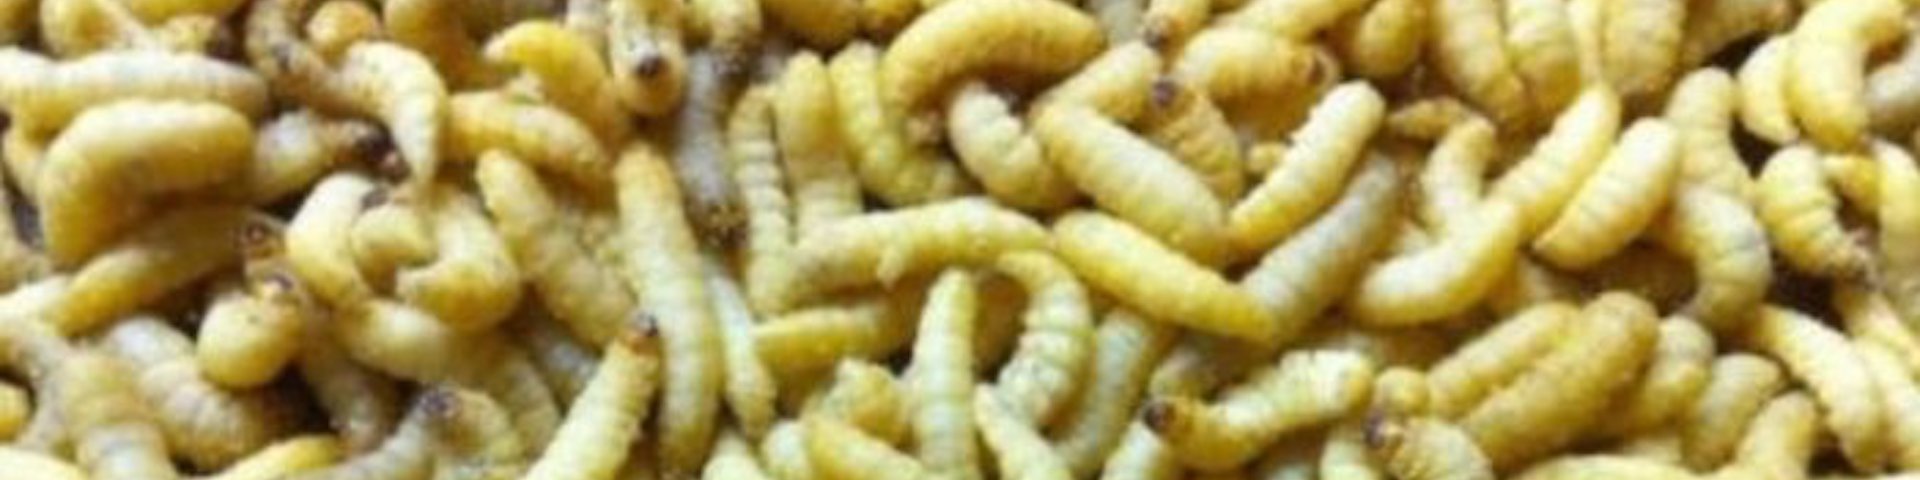 download petsmart wax worms